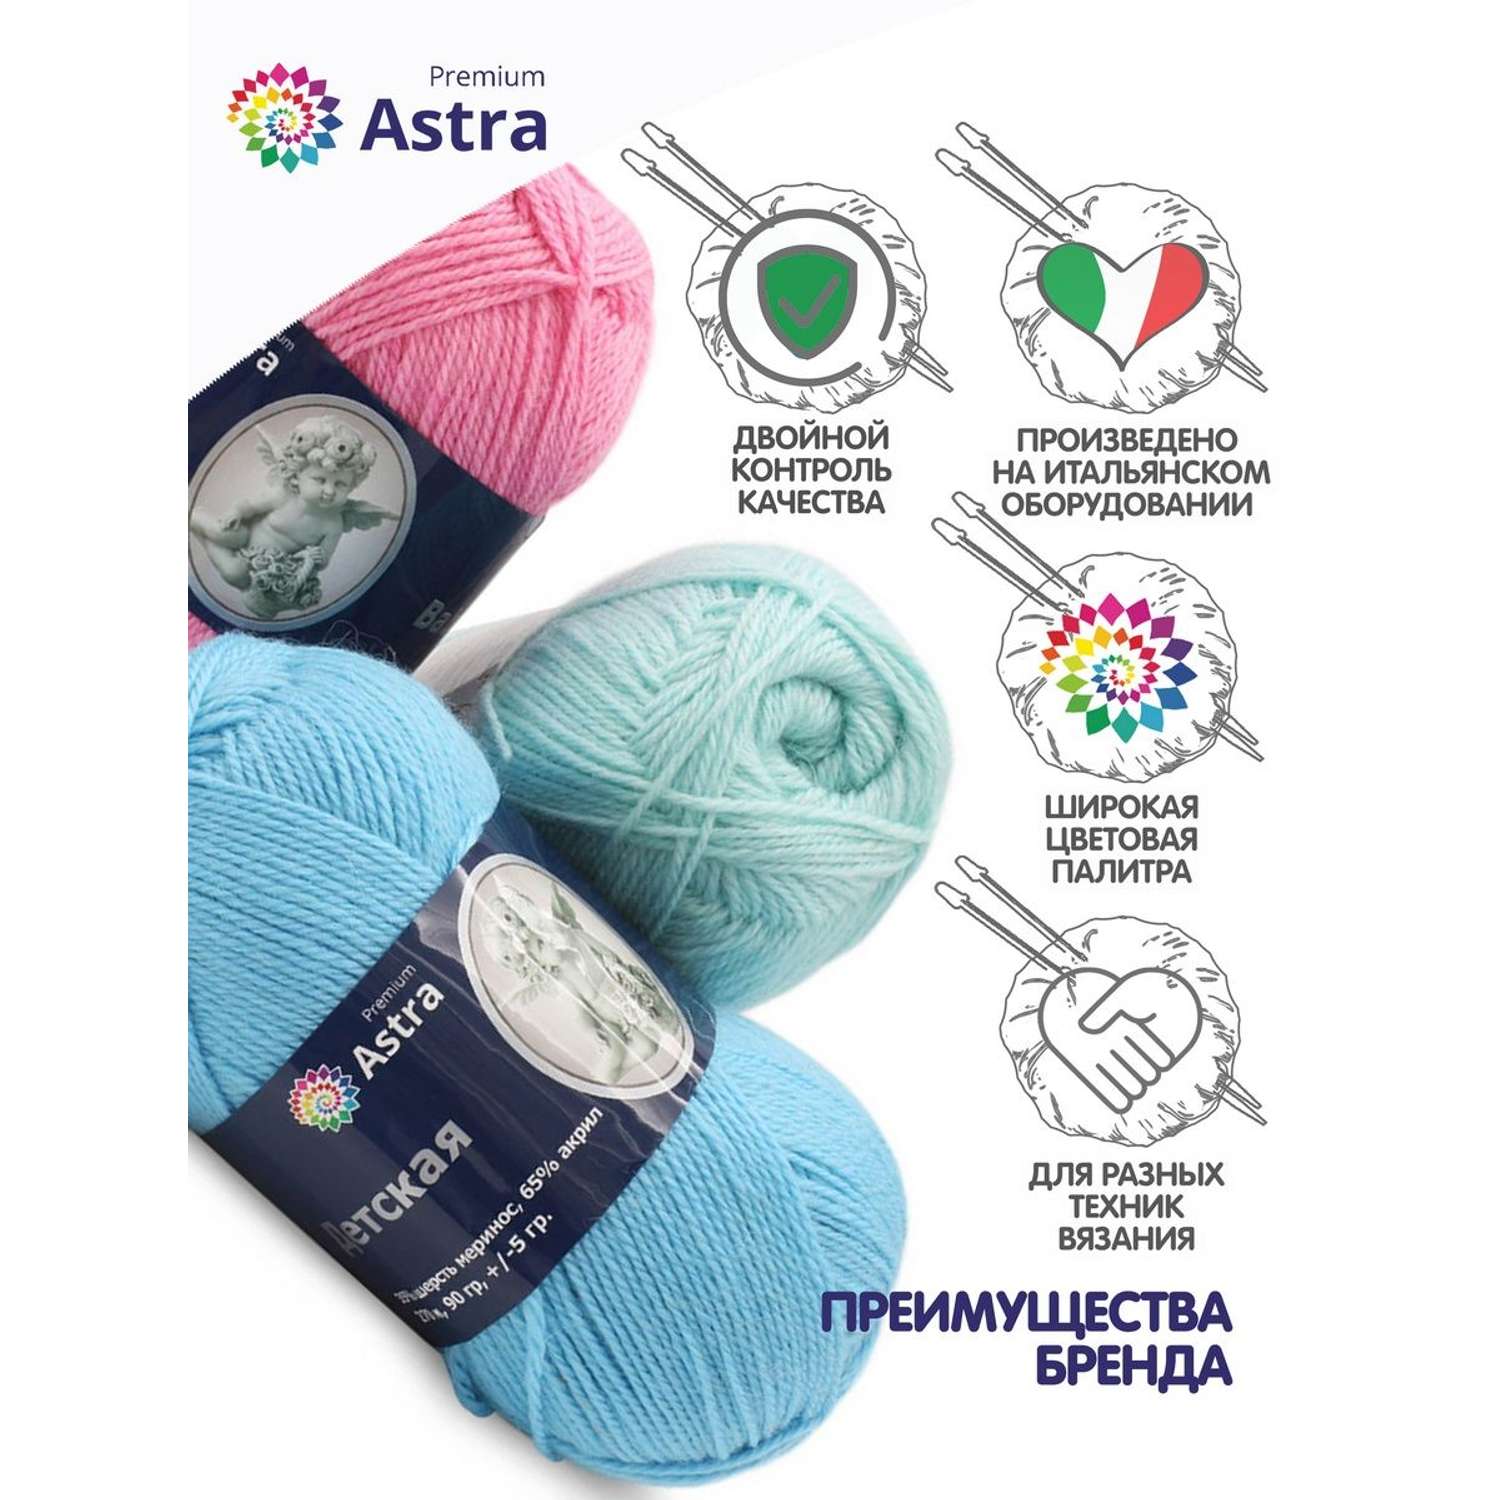 Пряжа для вязания Astra Premium детская из акрила и шерсти для детских вещей 90 гр 270 м черный 3 мотка - фото 3